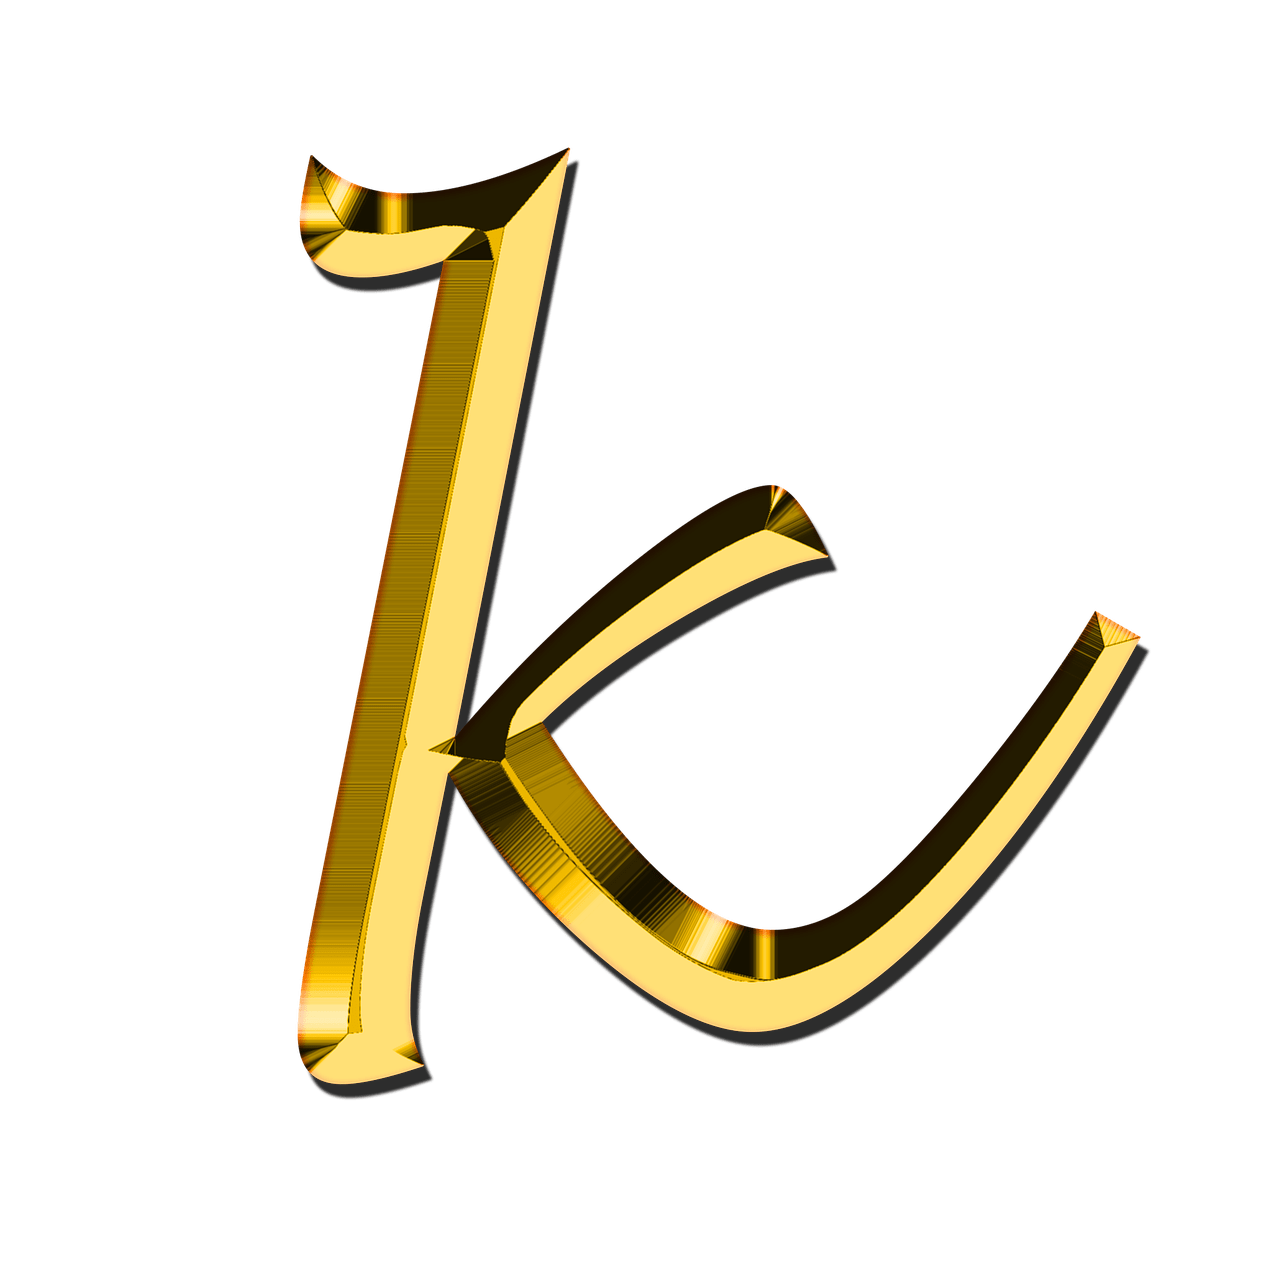 L clipart letter k, L letter k Transparent FREE for download on